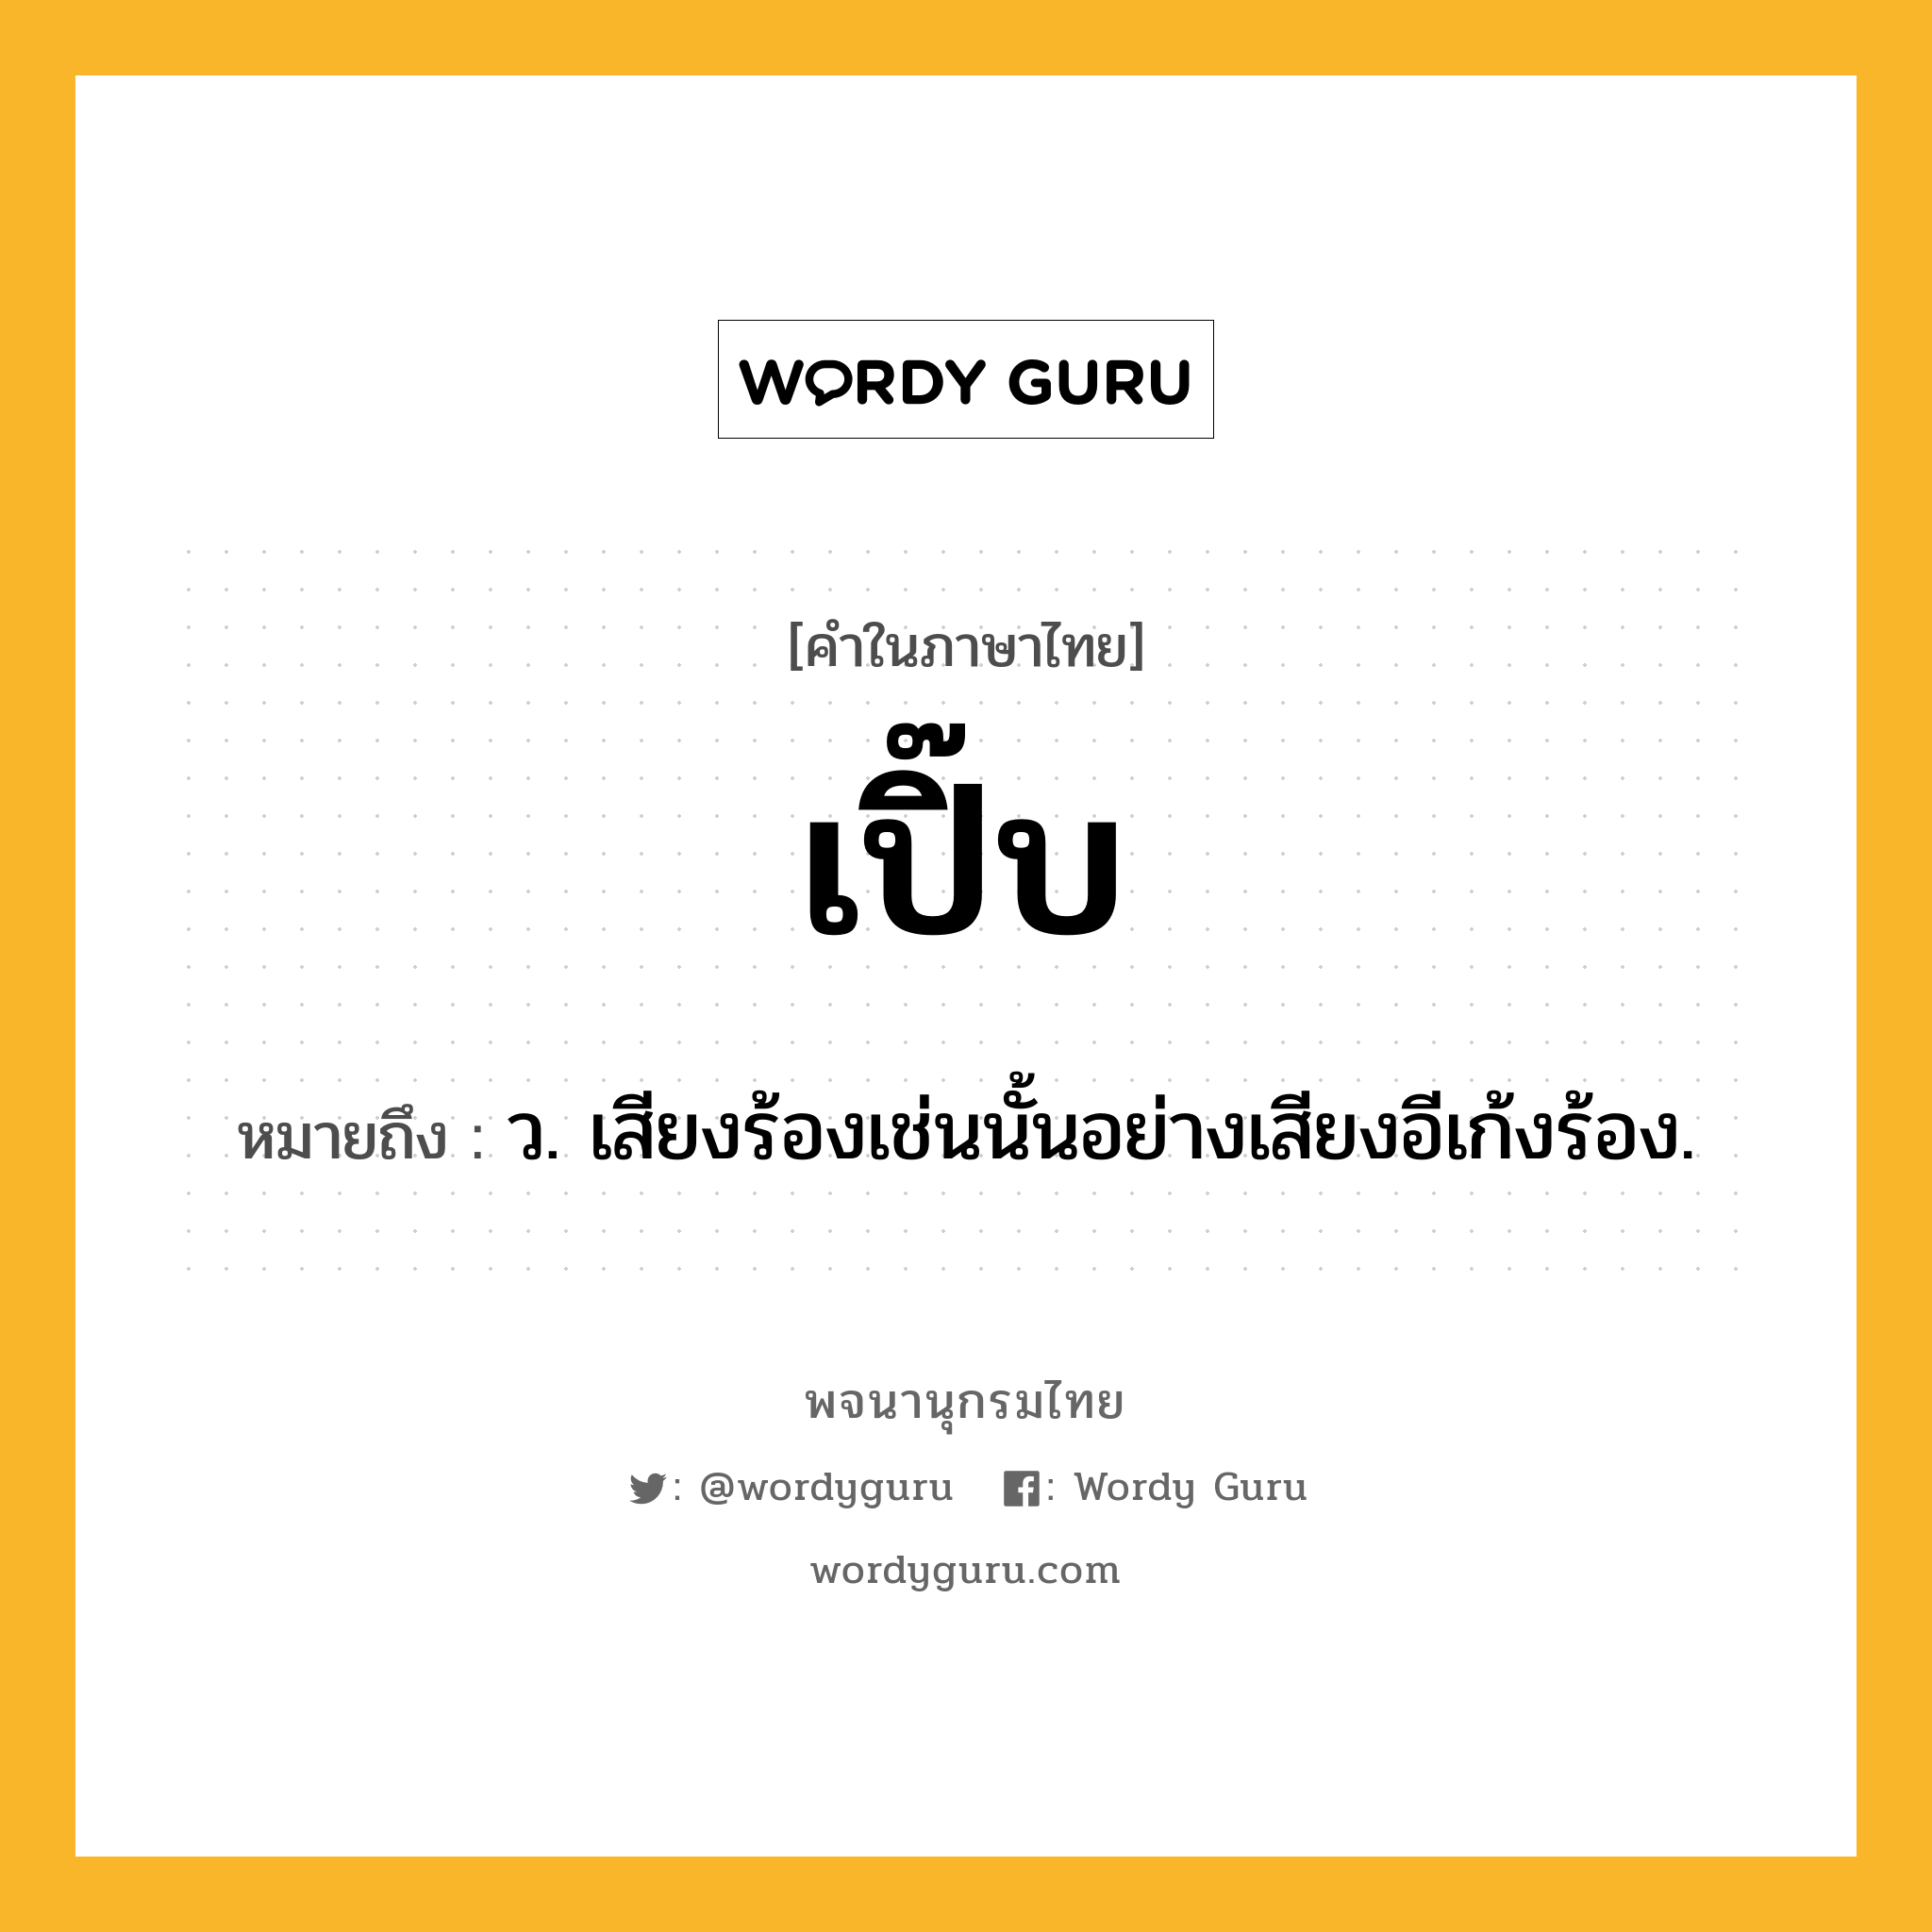 เปิ๊บ หมายถึงอะไร?, คำในภาษาไทย เปิ๊บ หมายถึง ว. เสียงร้องเช่นนั้นอย่างเสียงอีเก้งร้อง.